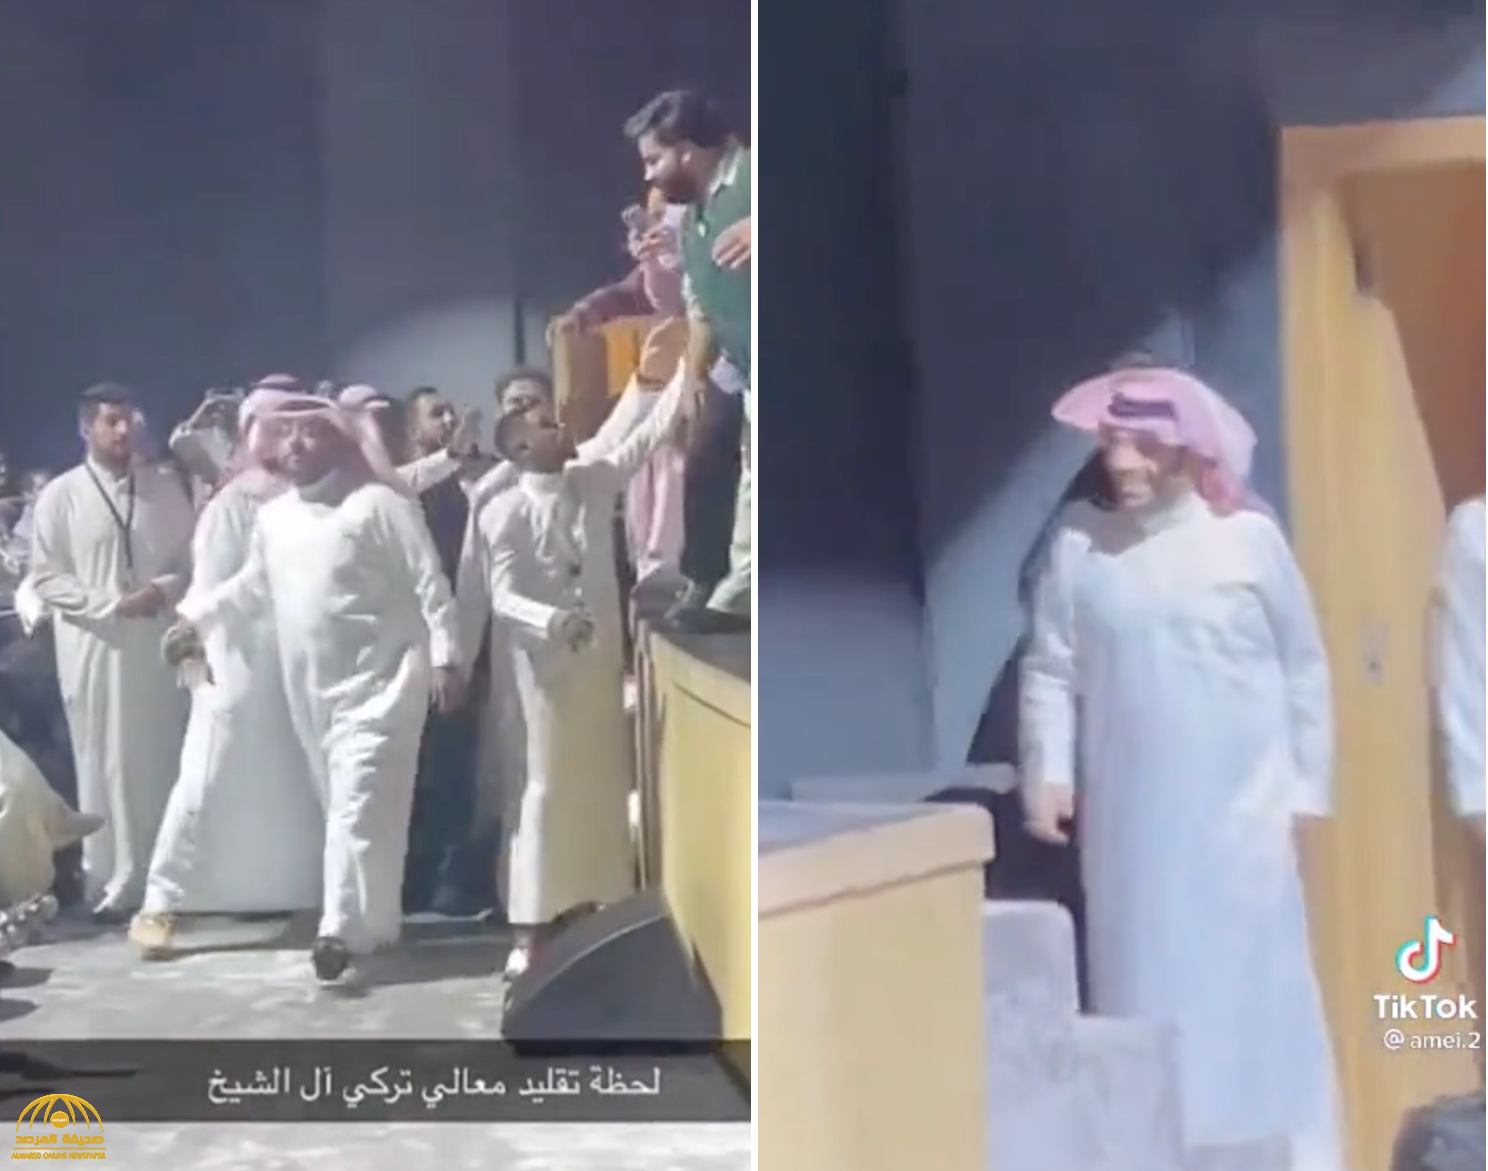 شاهد : الفنان الكويتي" حسن البلام" يقلد "تركي آل الشيخ" على المسرح .. والمستشار يُفاجئه بالدخول عليه